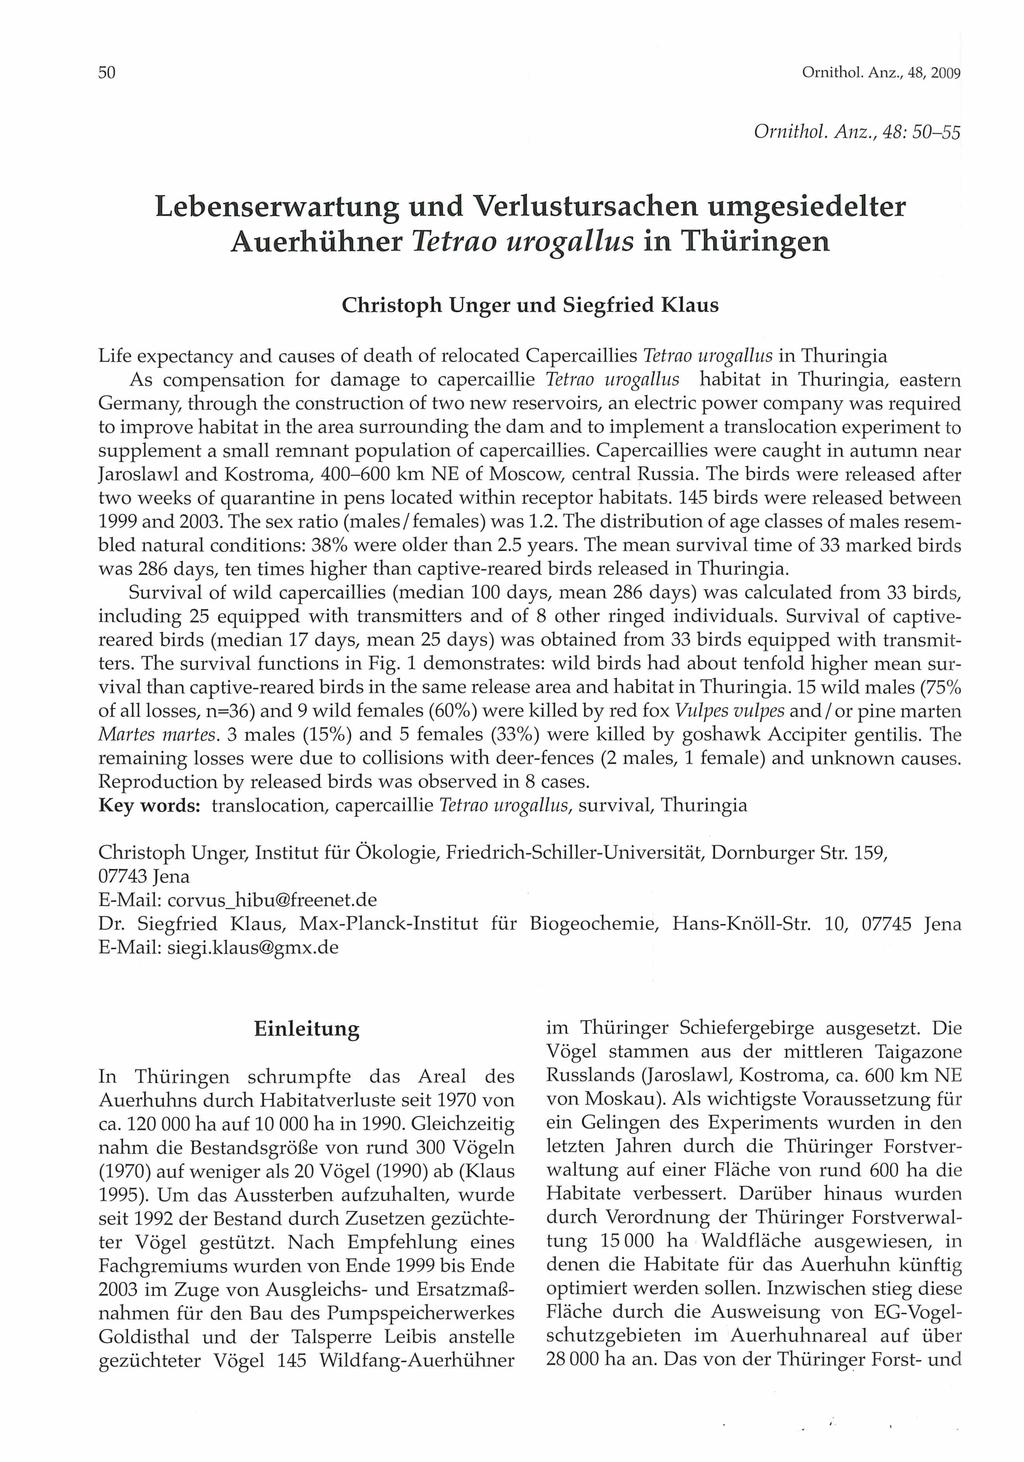 Ornithologische Gesellschaft Bayern, download unter www.biologiezentrum.at 50 Ornithol. Anz.